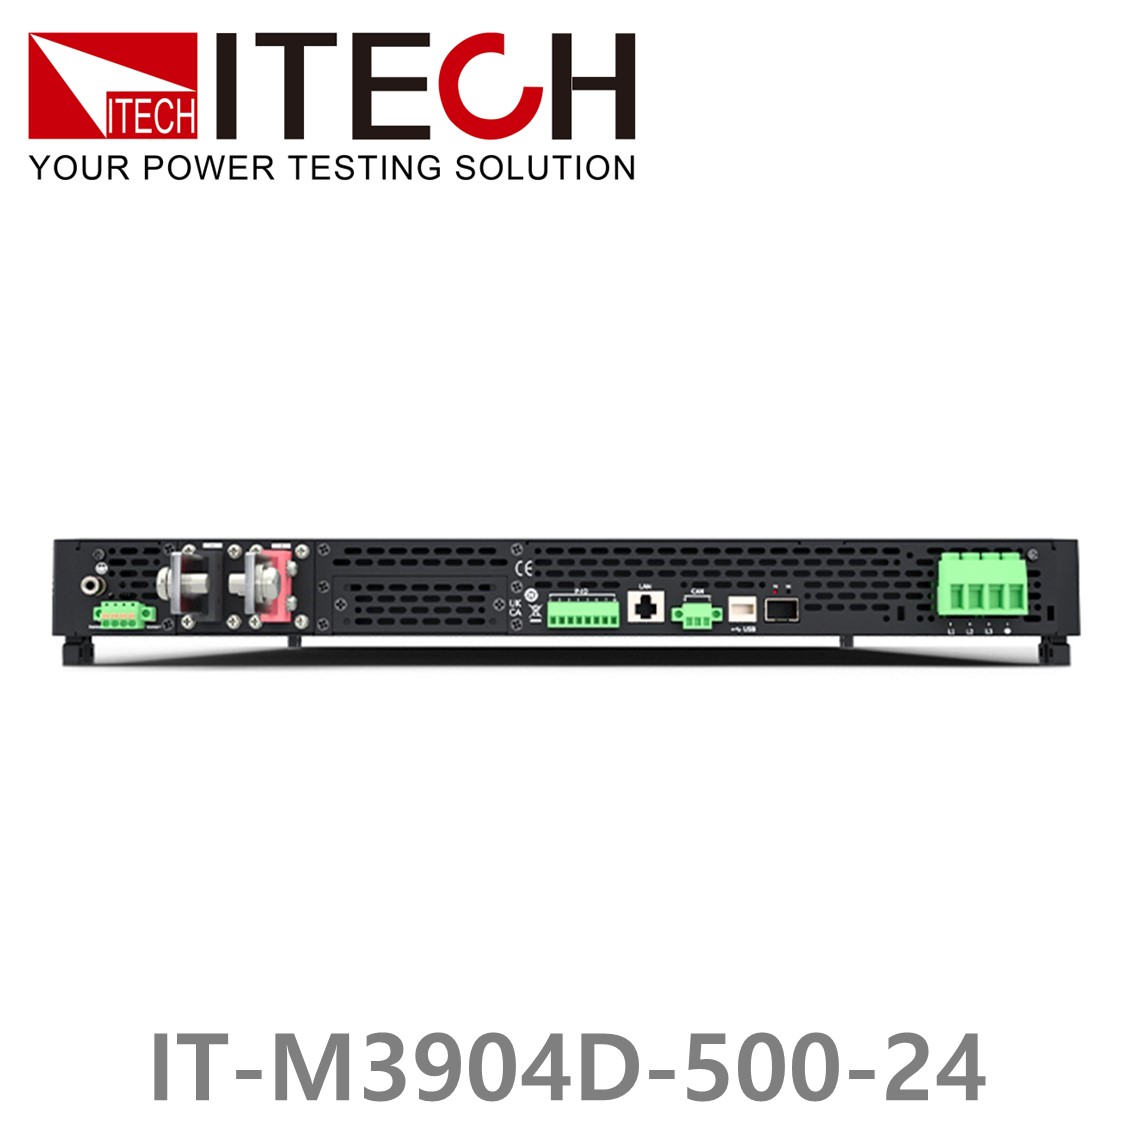 [ ITECH ] IT-M3904D-500-24 양방향 프로그래머블 DC전원공급기, DC파워서플라이